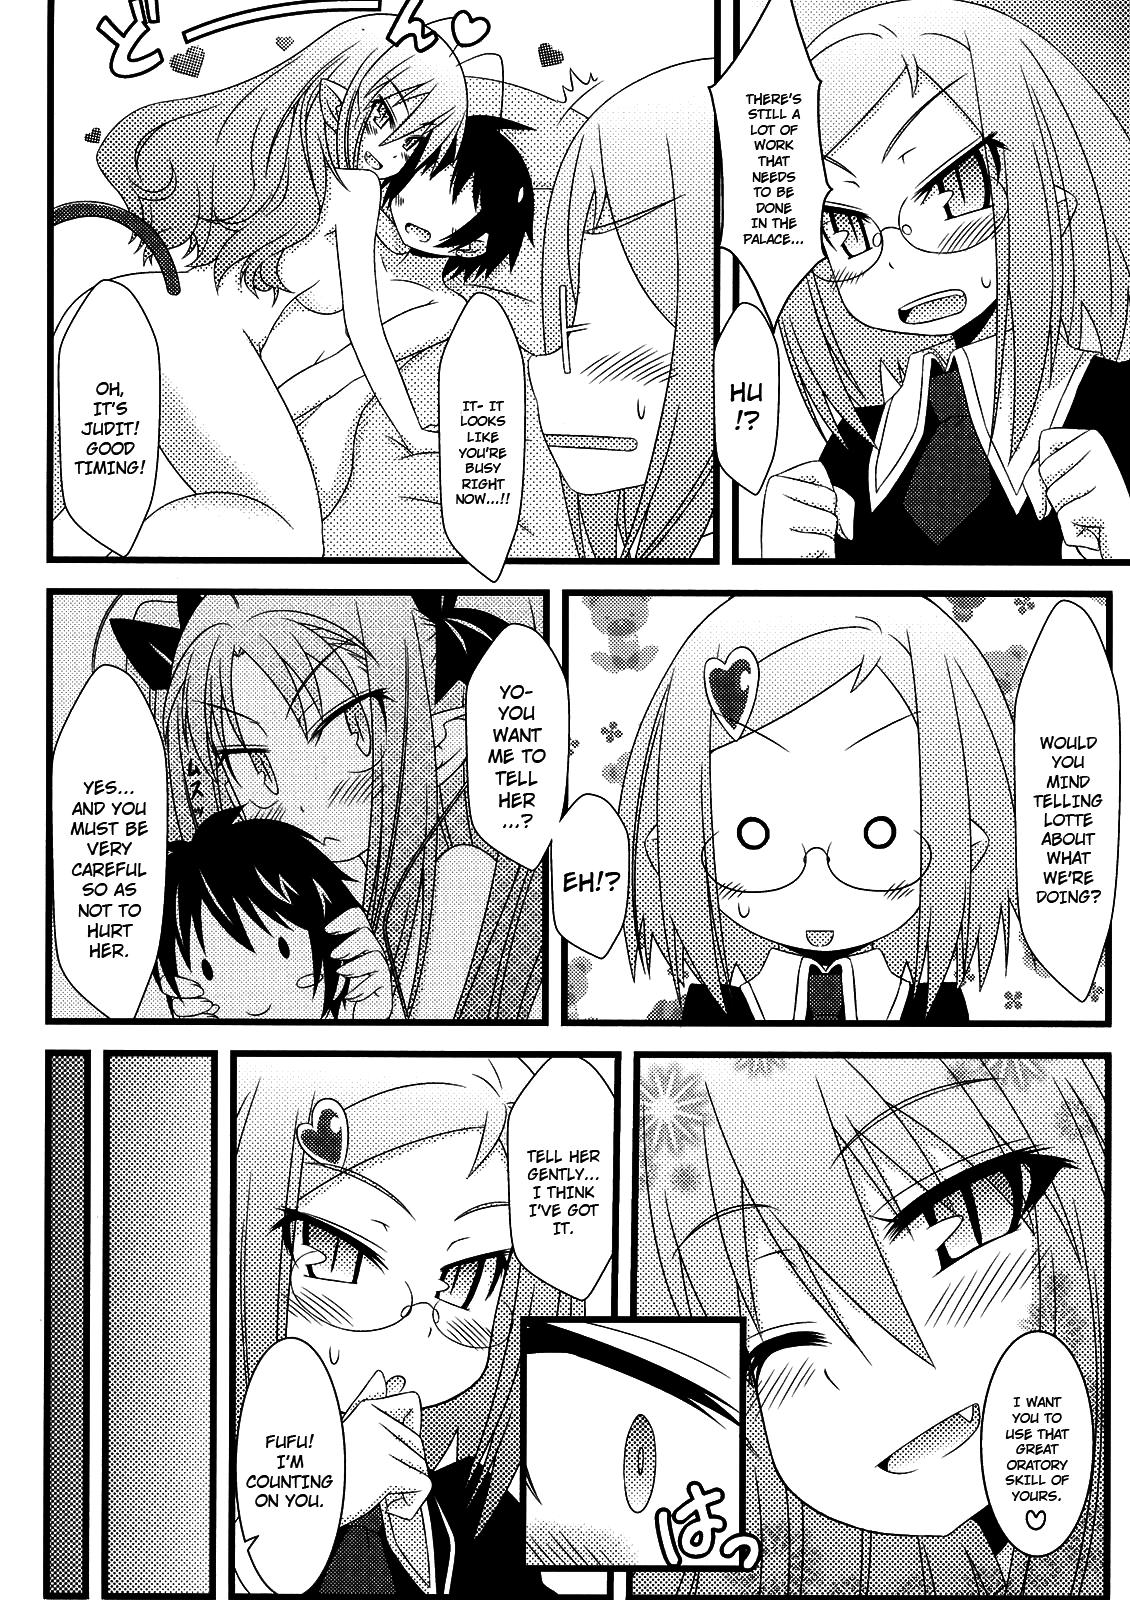 Sextoy Hajimete no Omocha! - Lotte no omocha Huge Boobs - Page 11